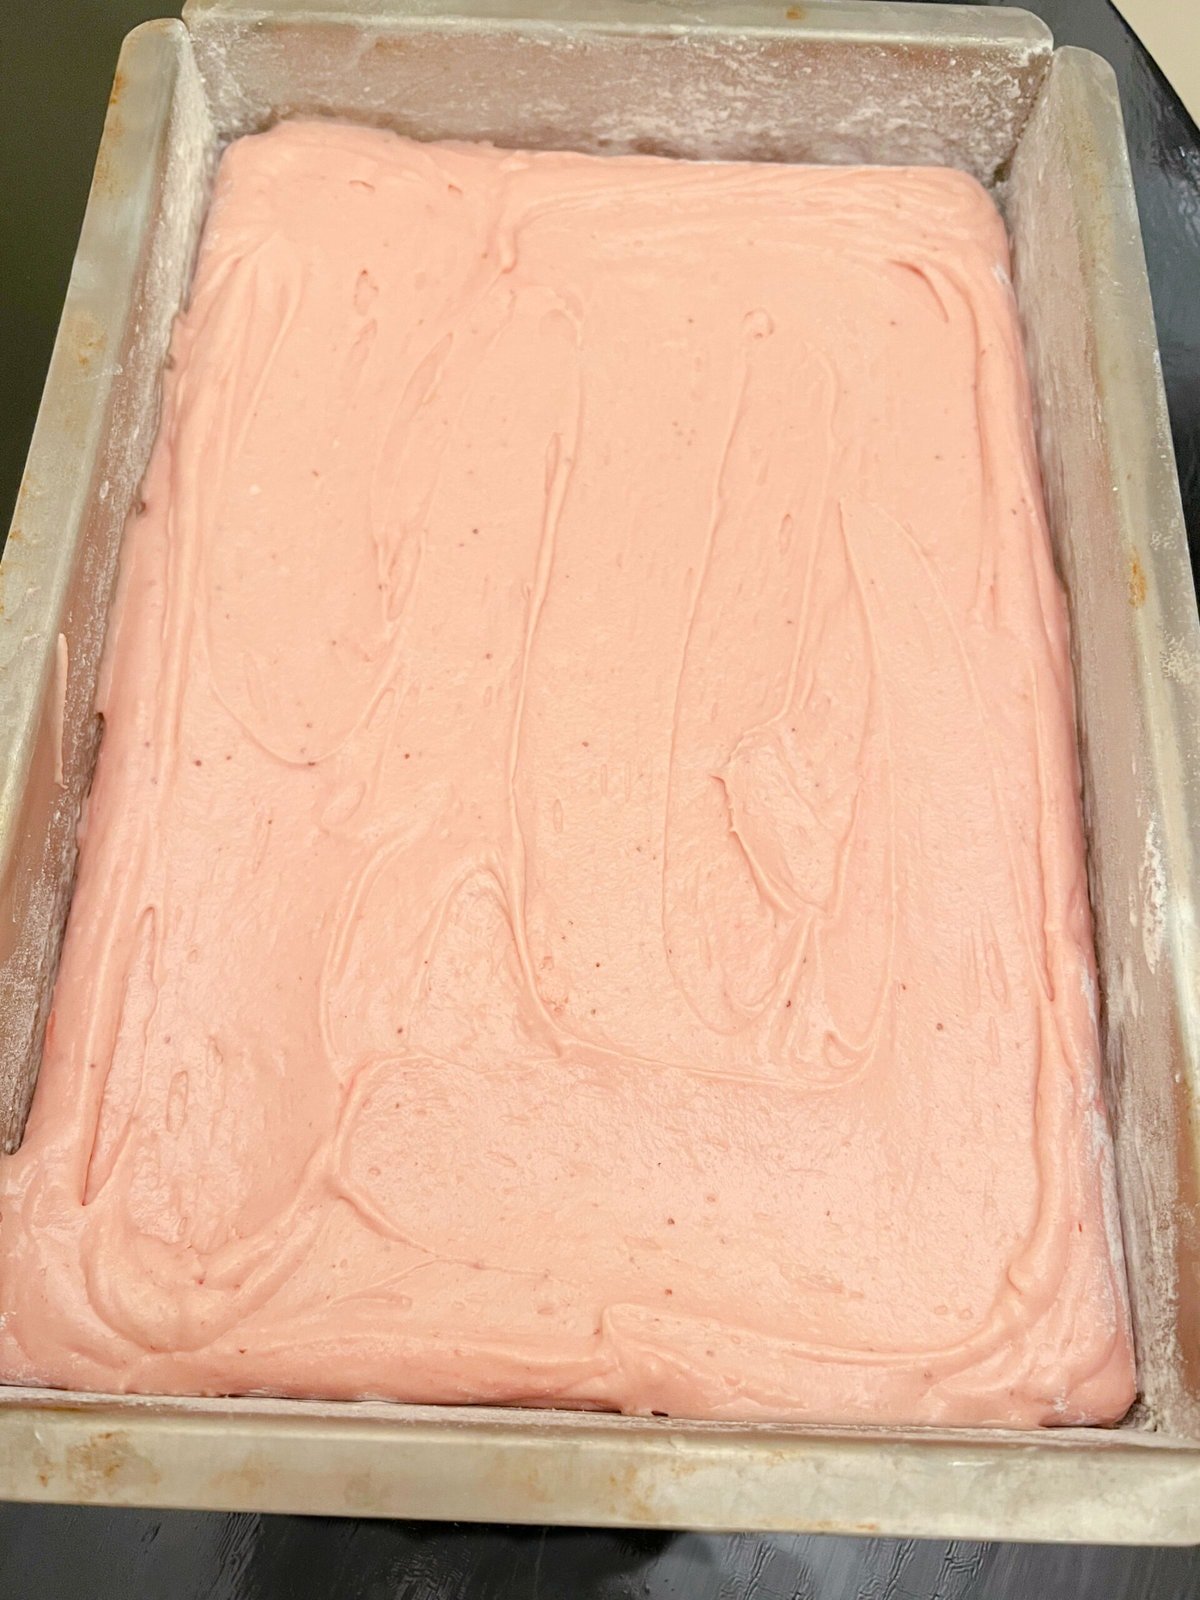 Strawberry Cake Batter in sheet cake pan.